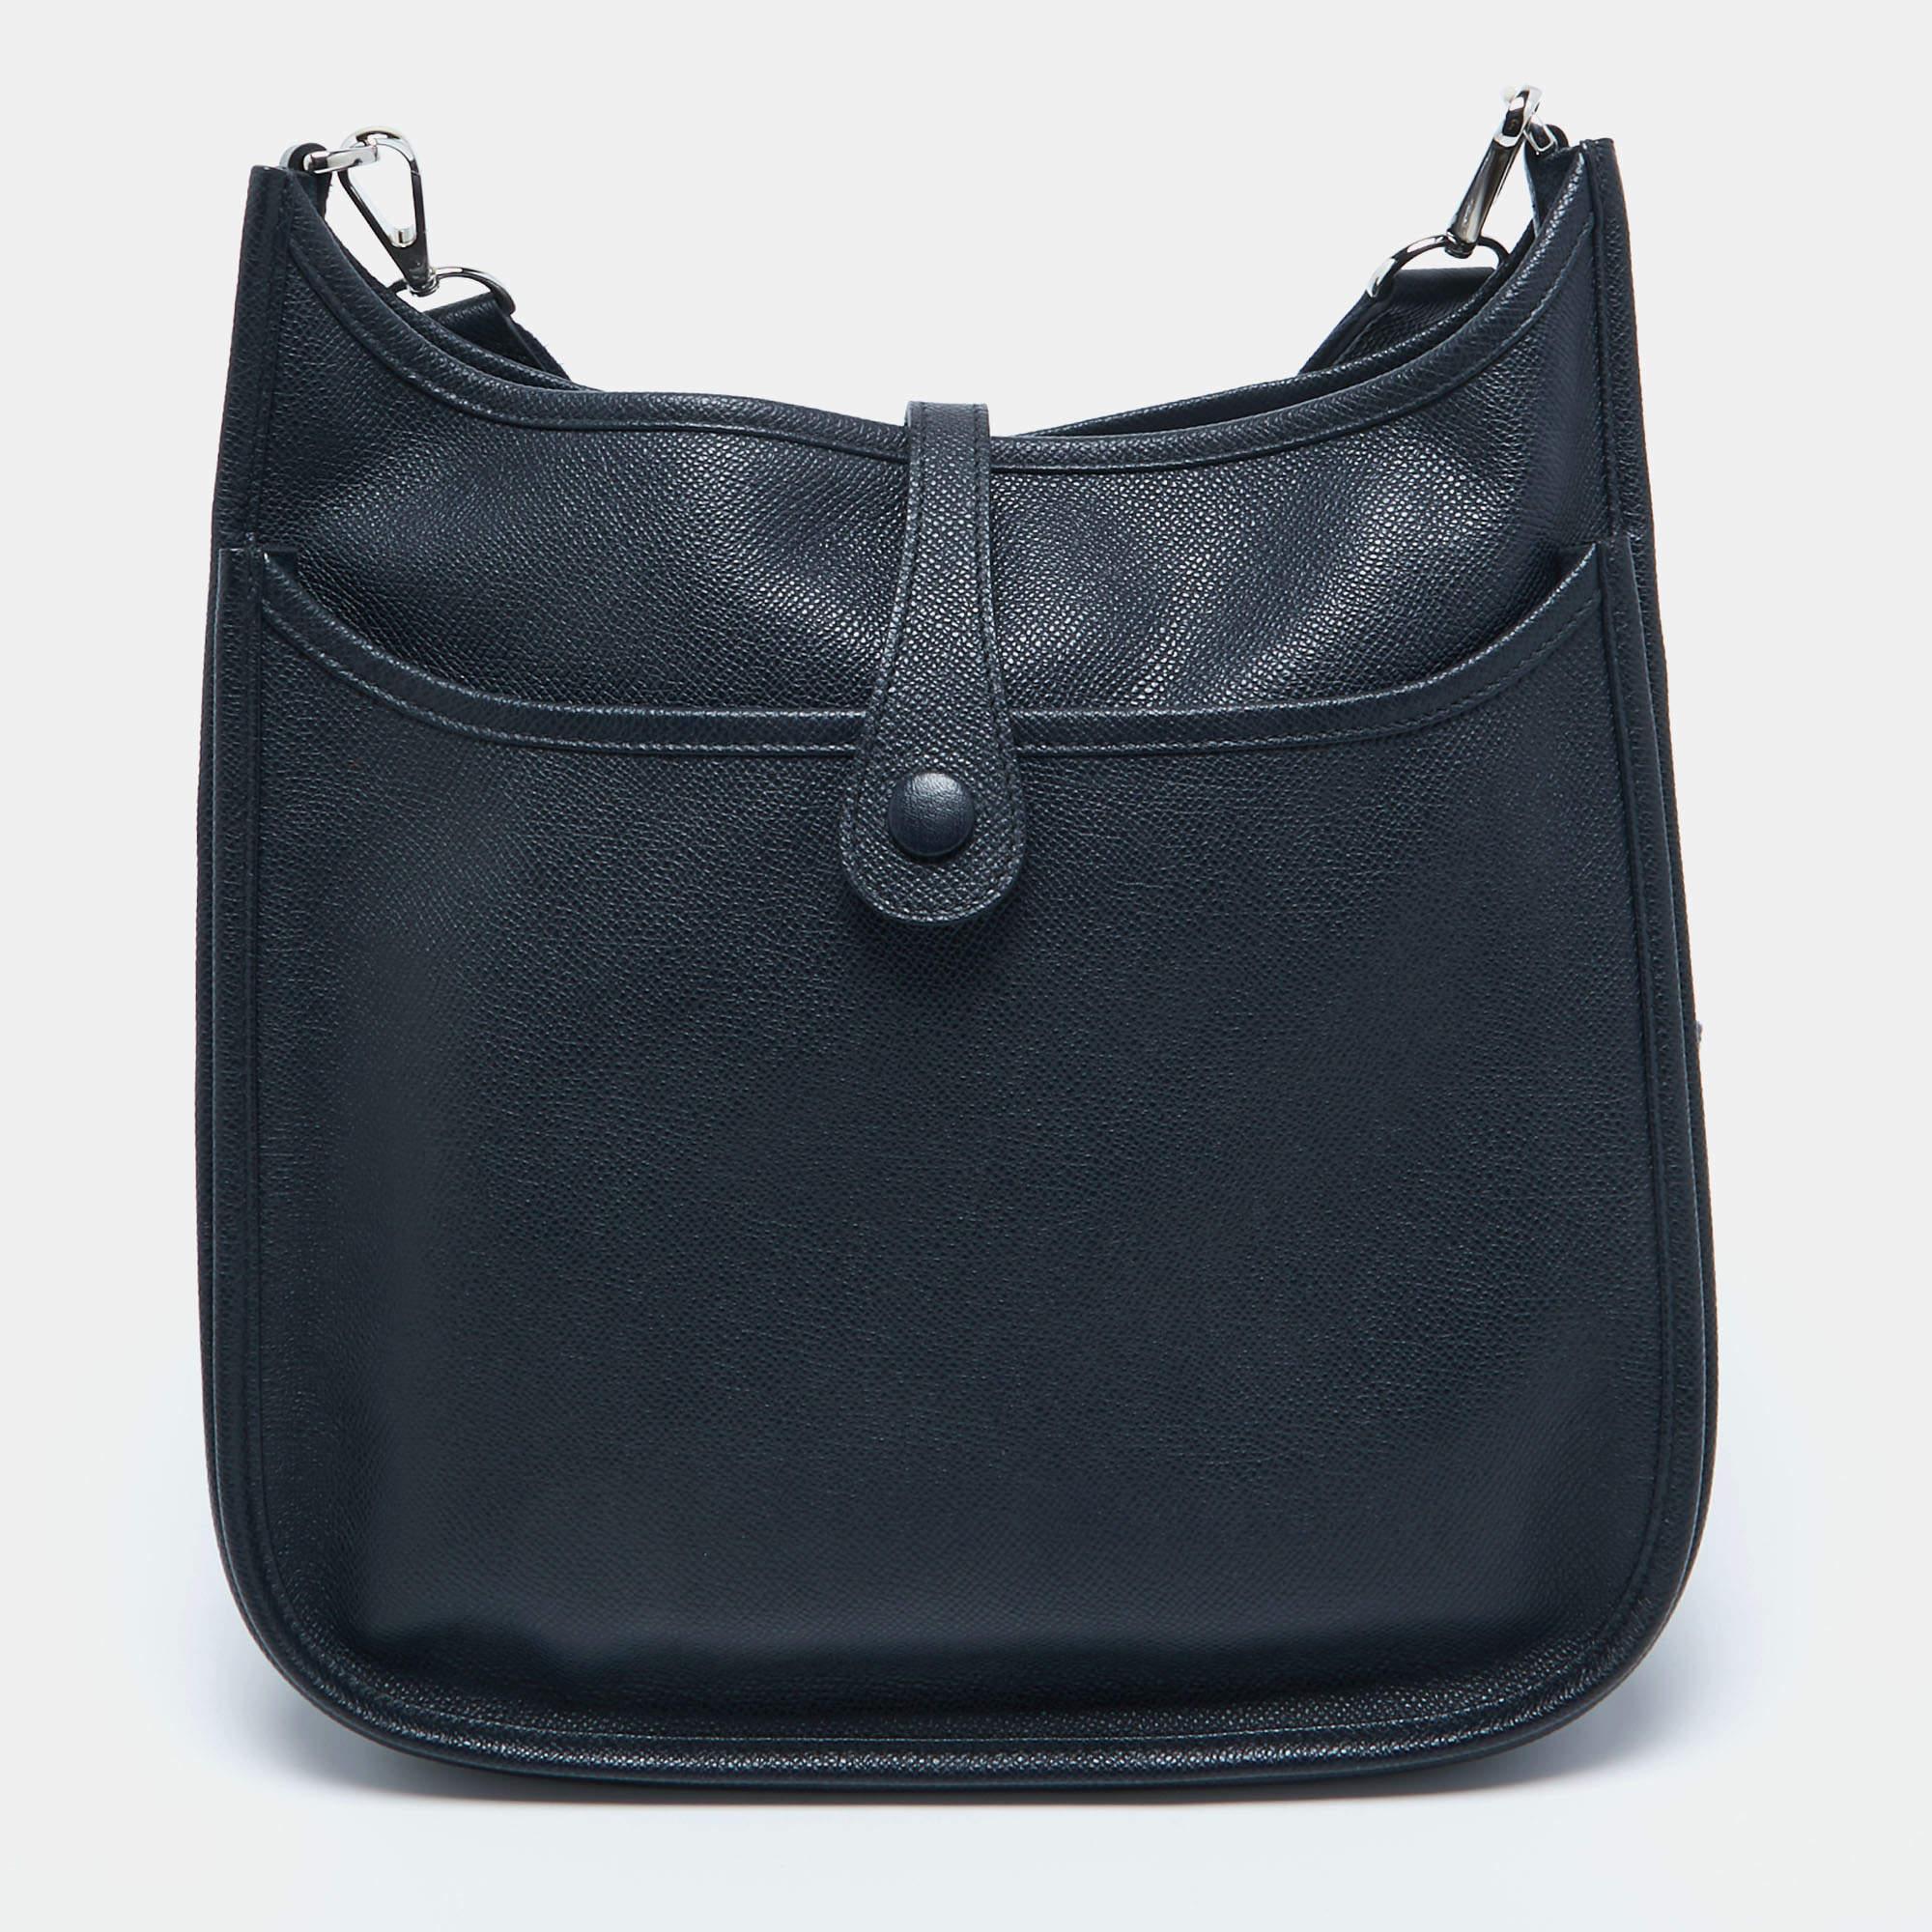 Le sac Hermès Evelyne III PM est un accessoire sophistiqué et polyvalent. Confectionné en cuir luxueux d'Epsom dans une superbe teinte bleue, il présente le logo H perforé emblématique, un intérieur spacieux et une sangle réglable, ce qui en fait un